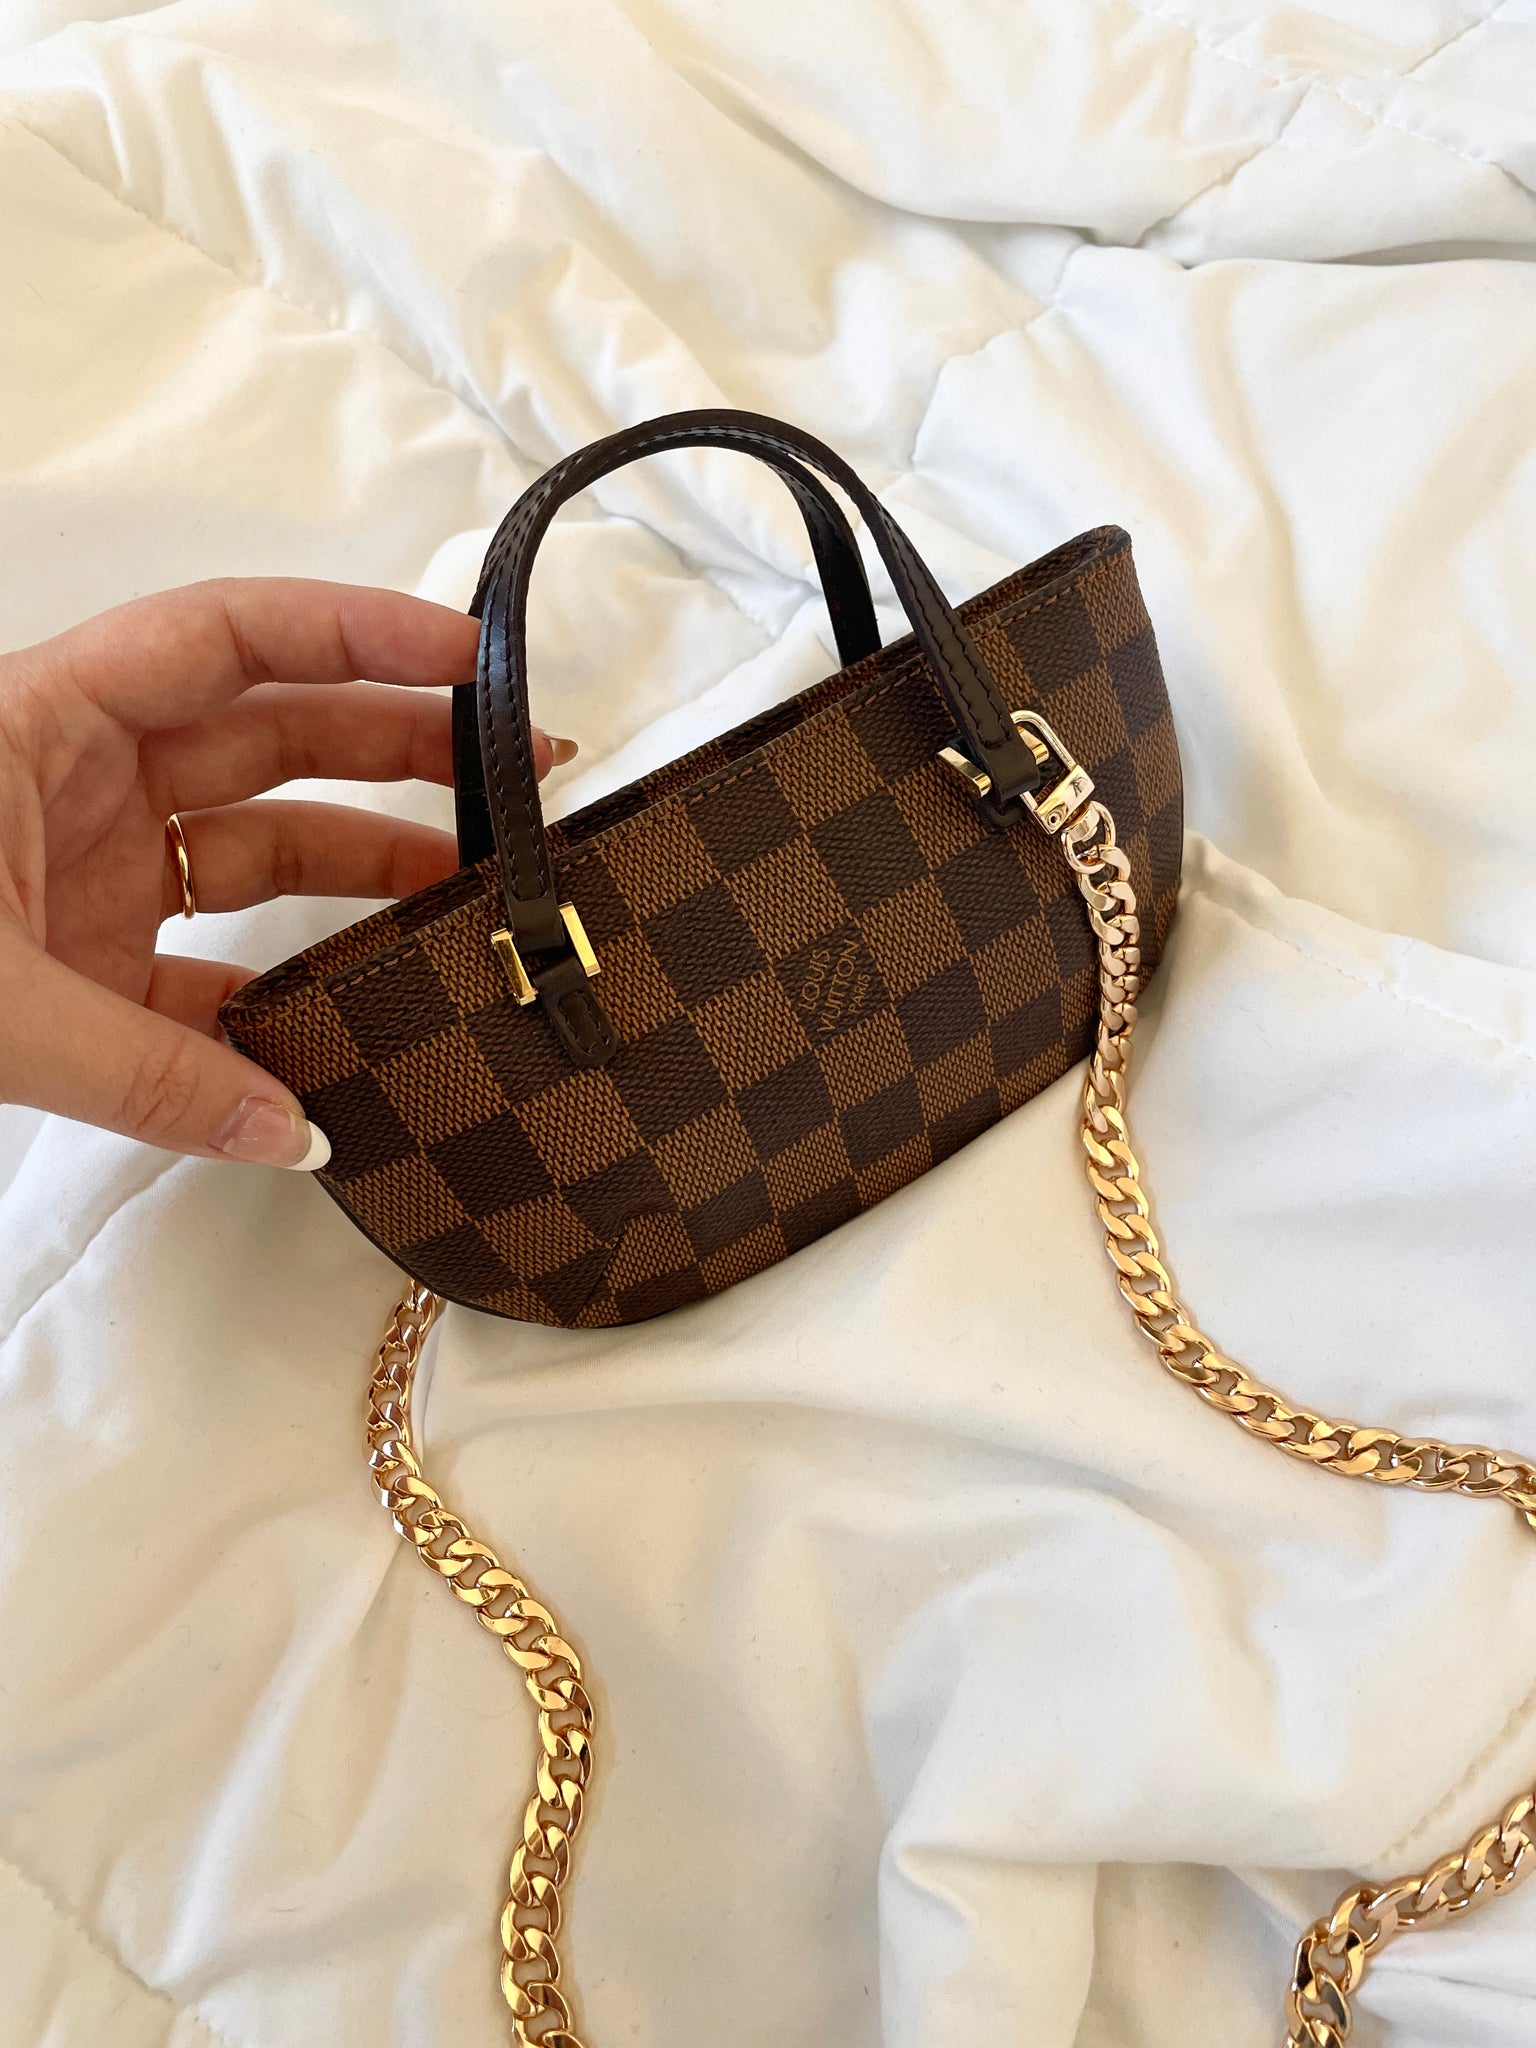 Extremely Rare Louis Vuitton Damier Ebene Mini Bag